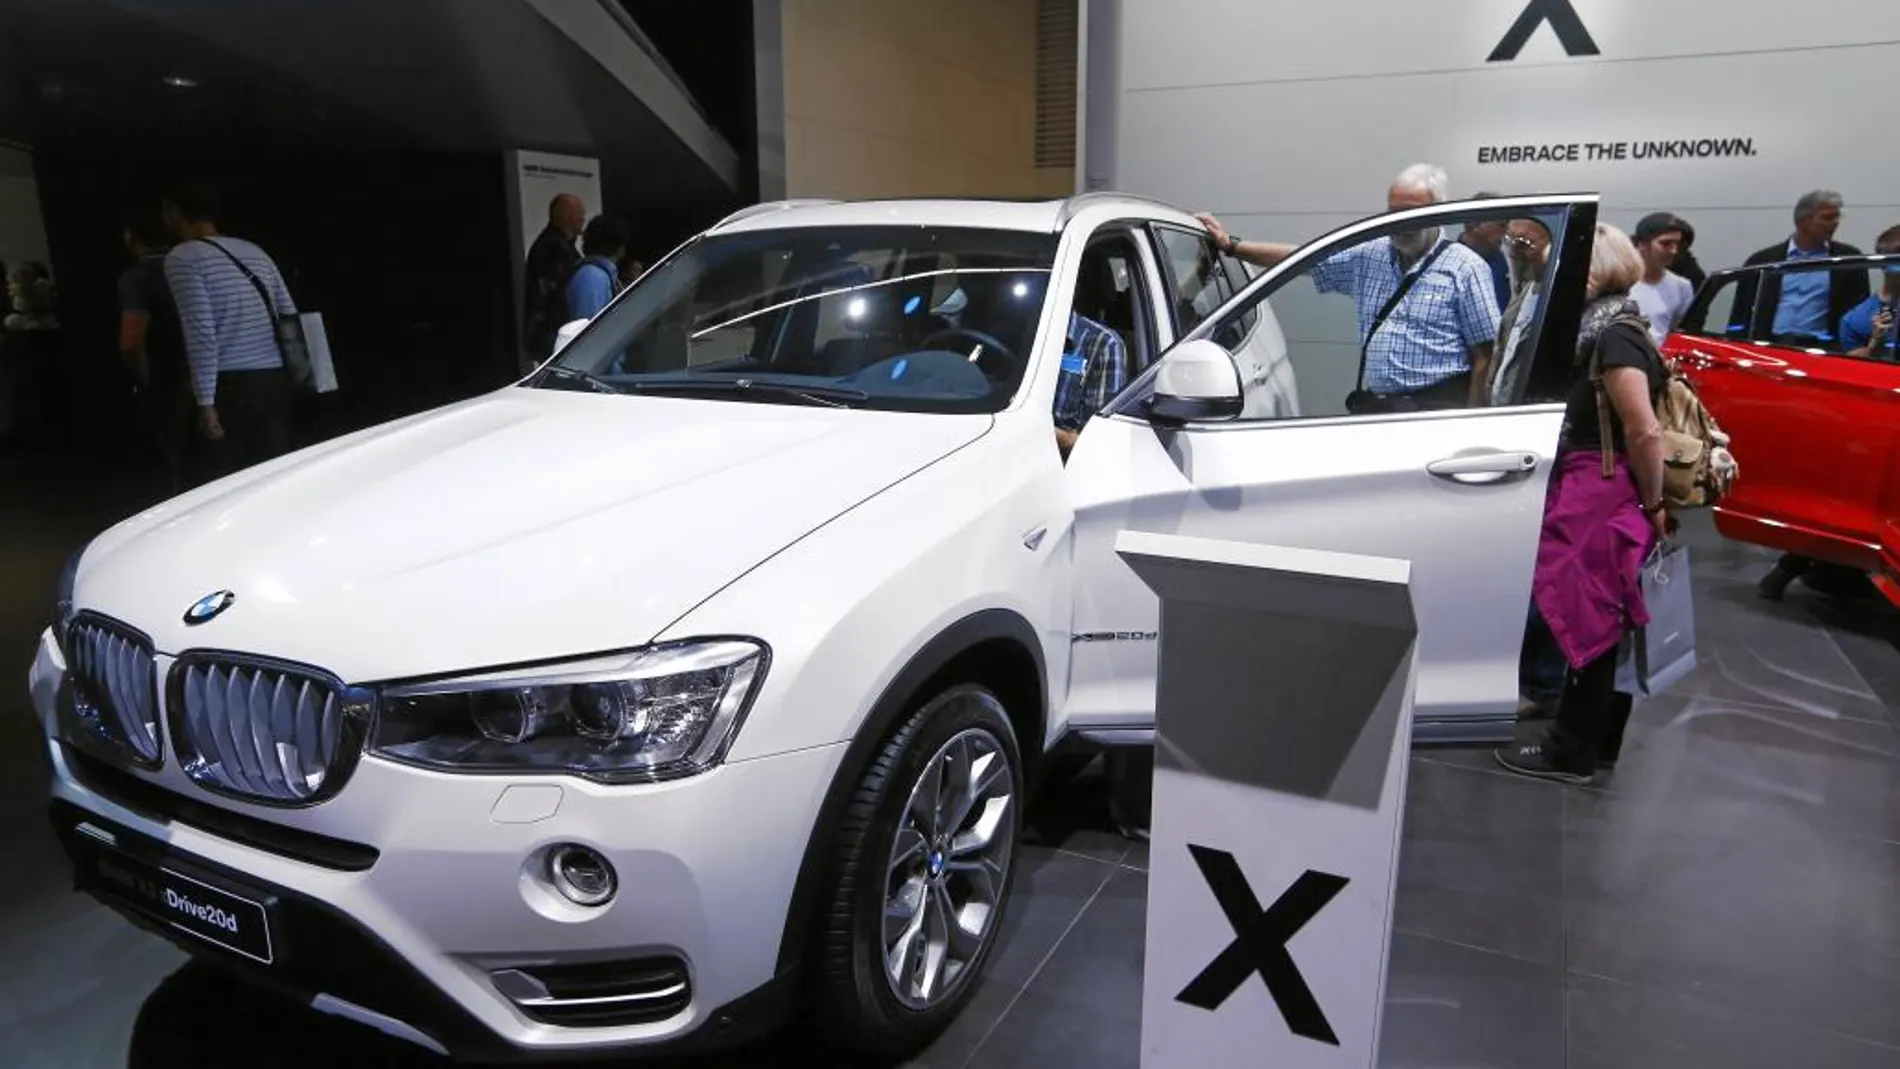 Modelo BMW X3, del que una revista alemana afirmó que sus emisiones rebasaban la legalidad vigente. Posteriormente, la propia publicación desmintió la información